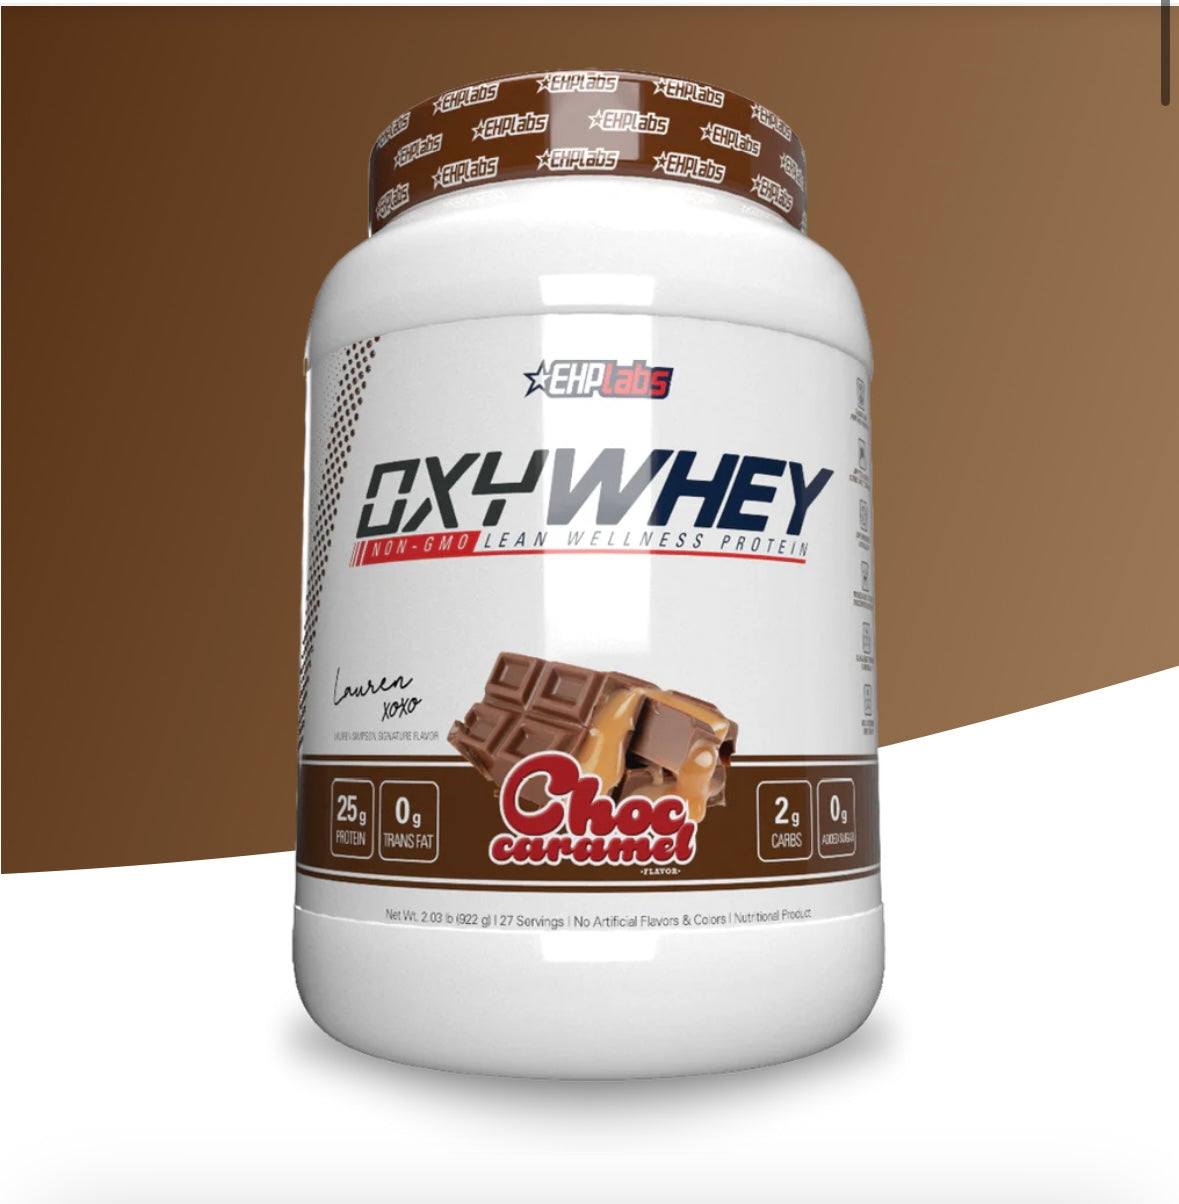 OxyWhey Lean Wellness Protein - Choc Caramel